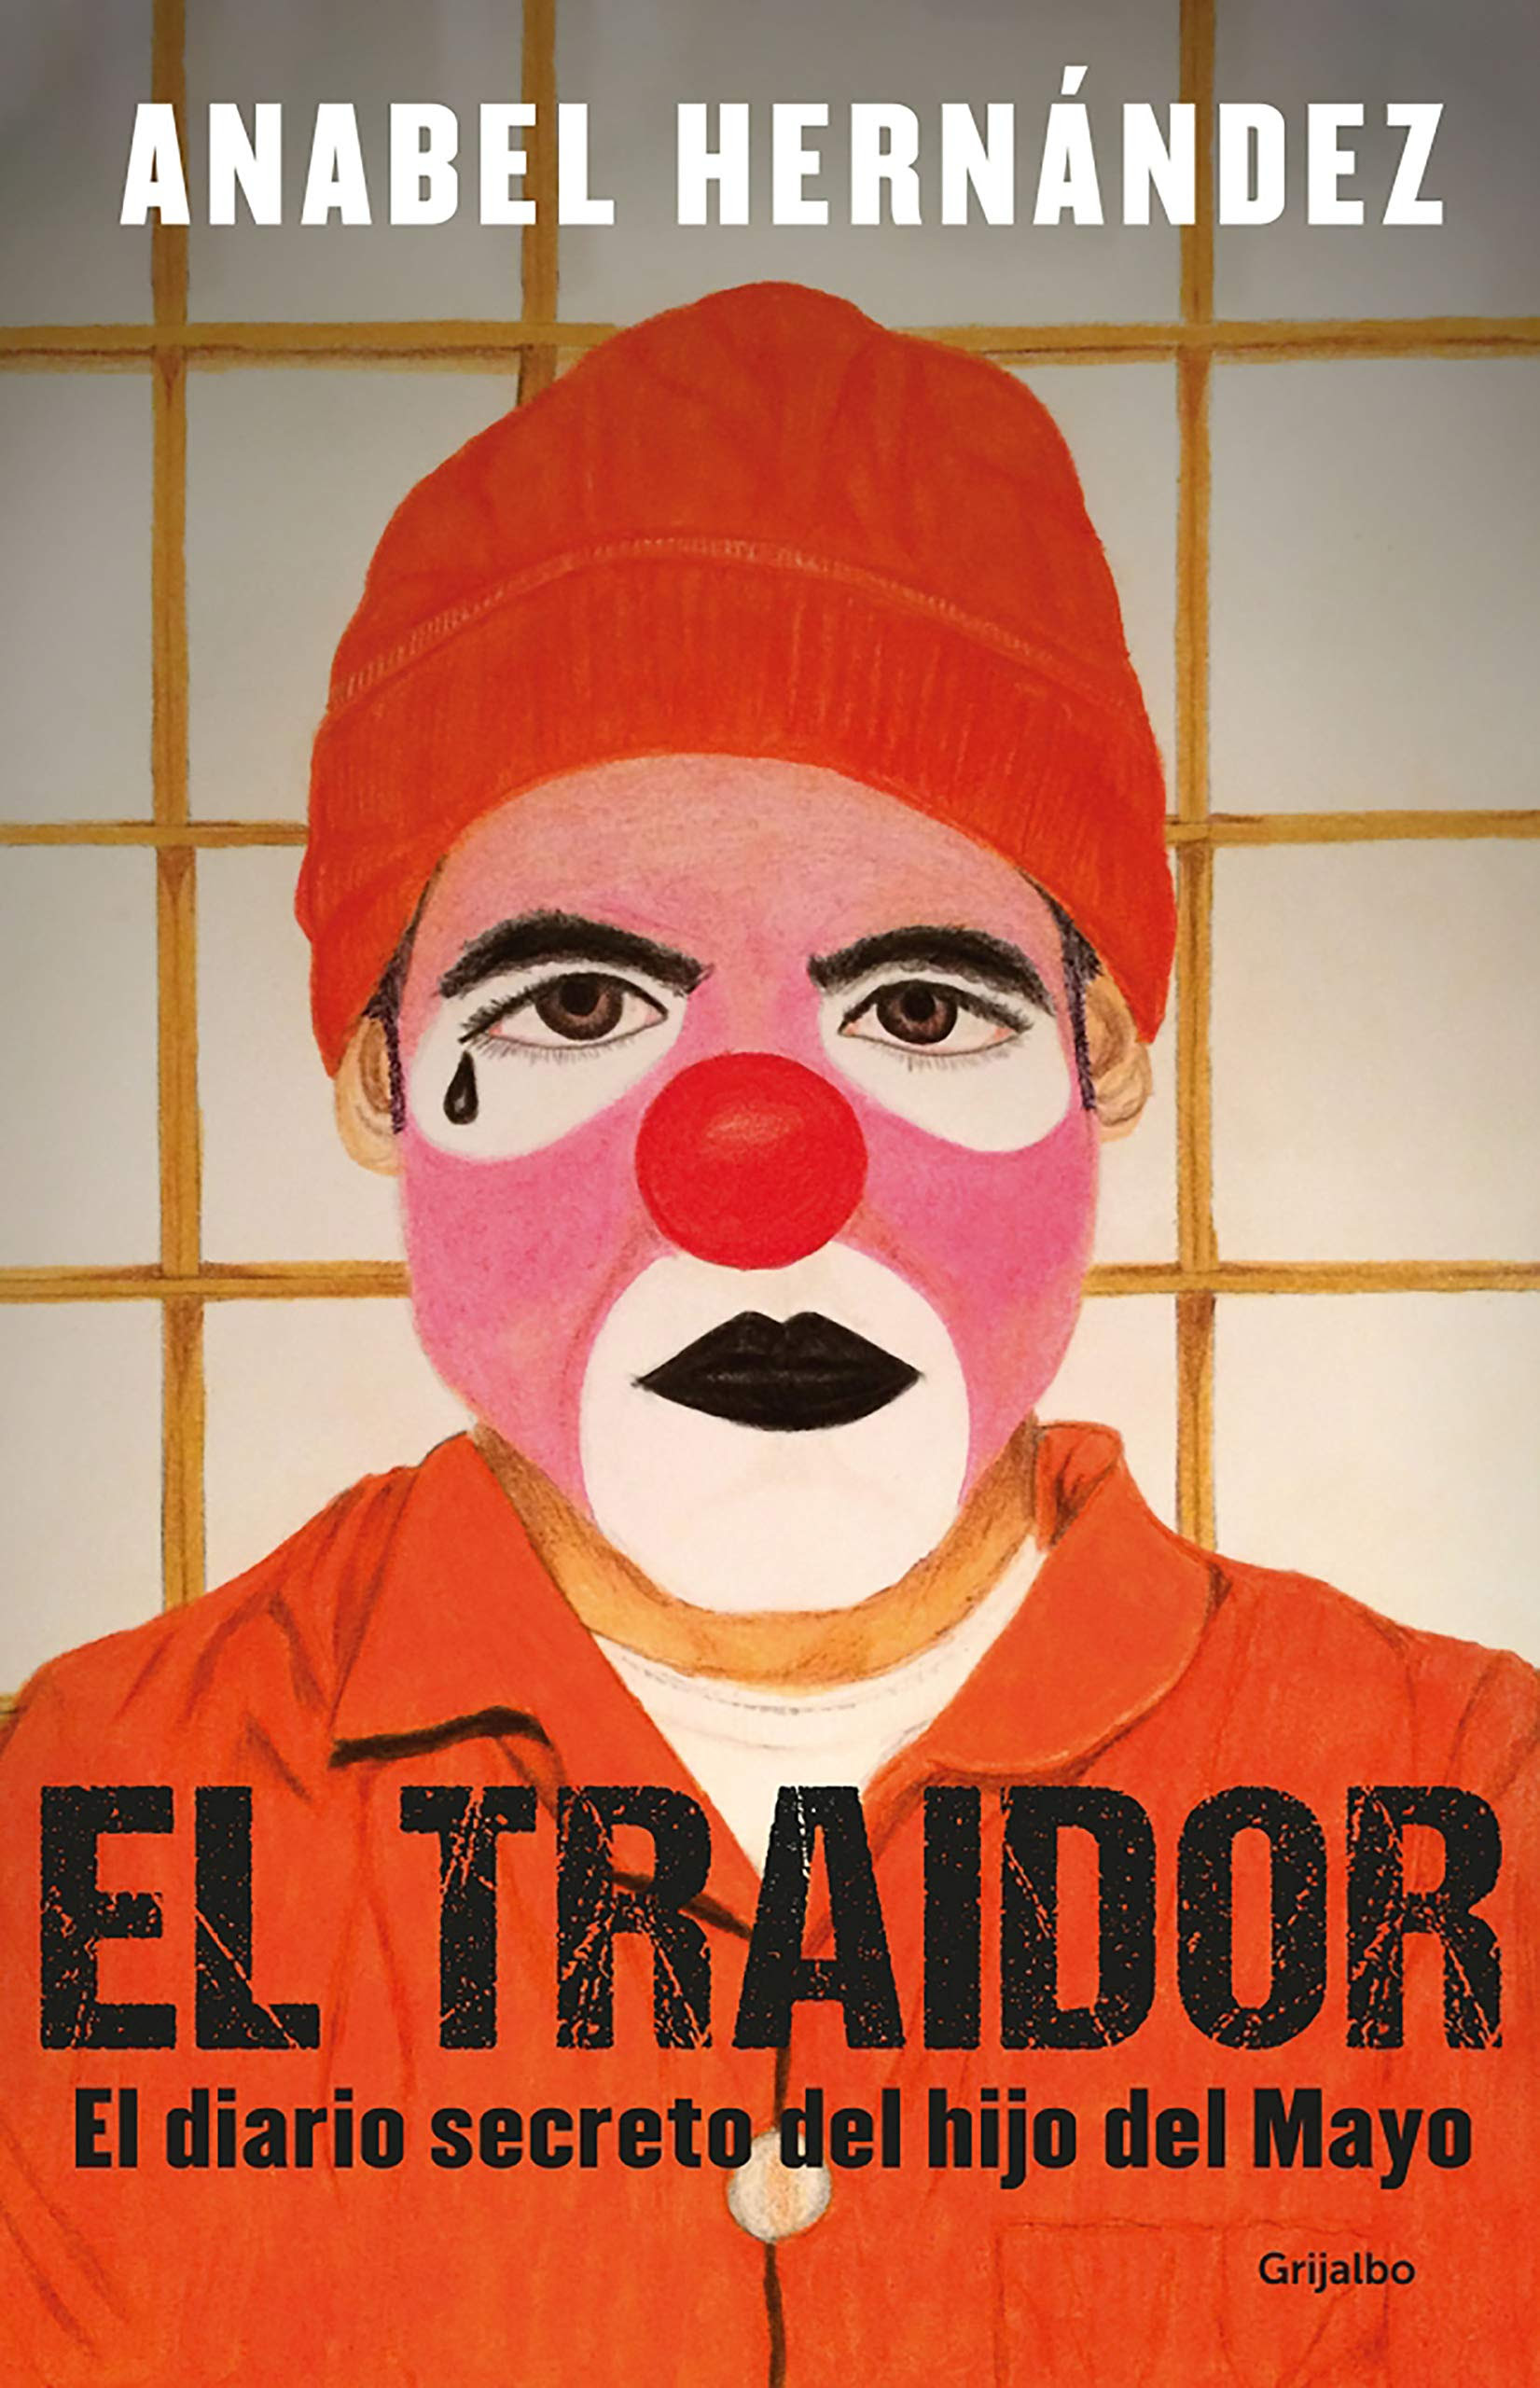 pdf download El Traidor: El diario secreto del hijo del Mayo